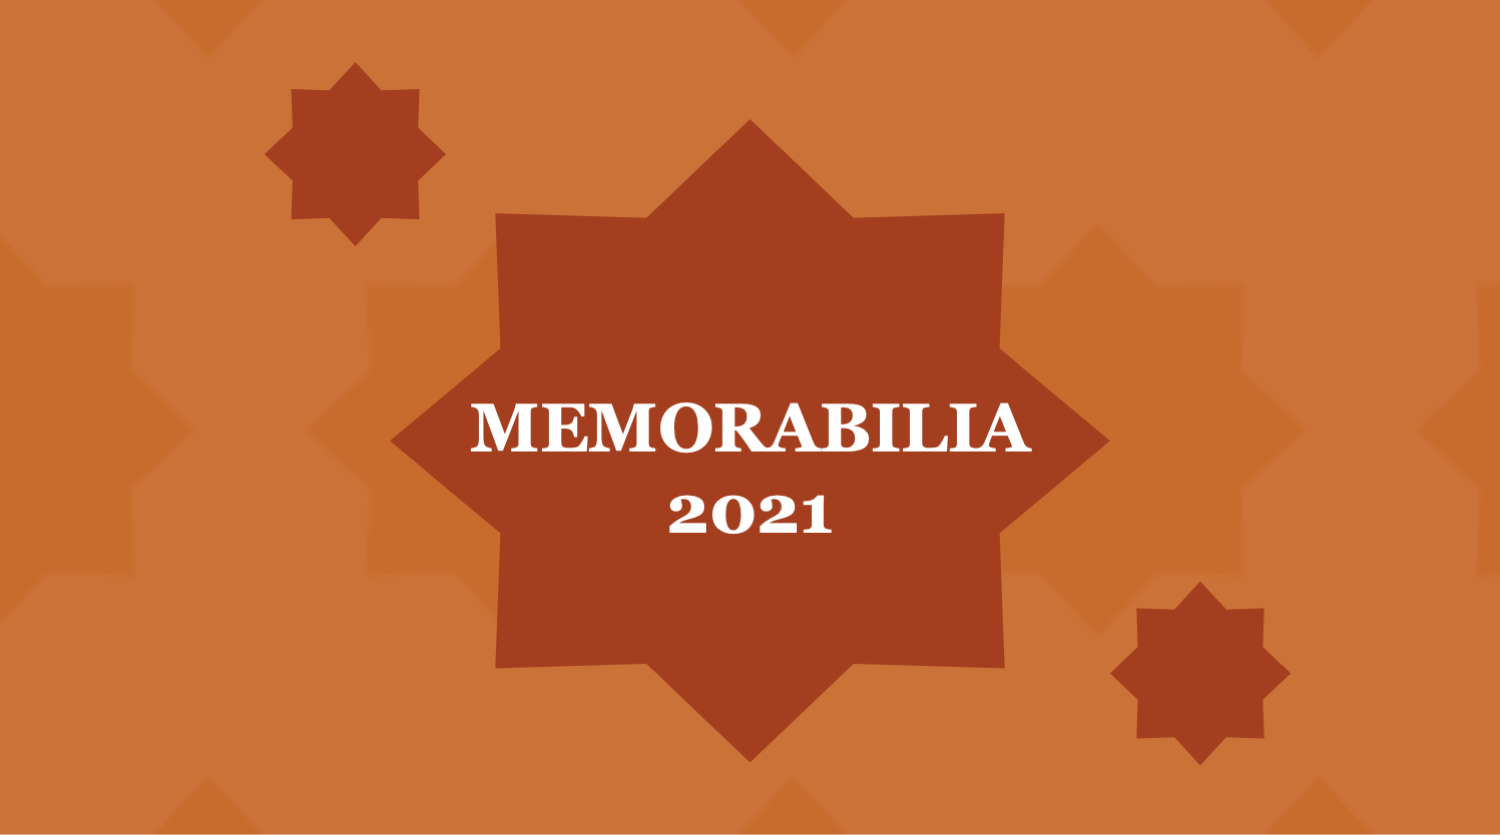 Memorabilia 2021